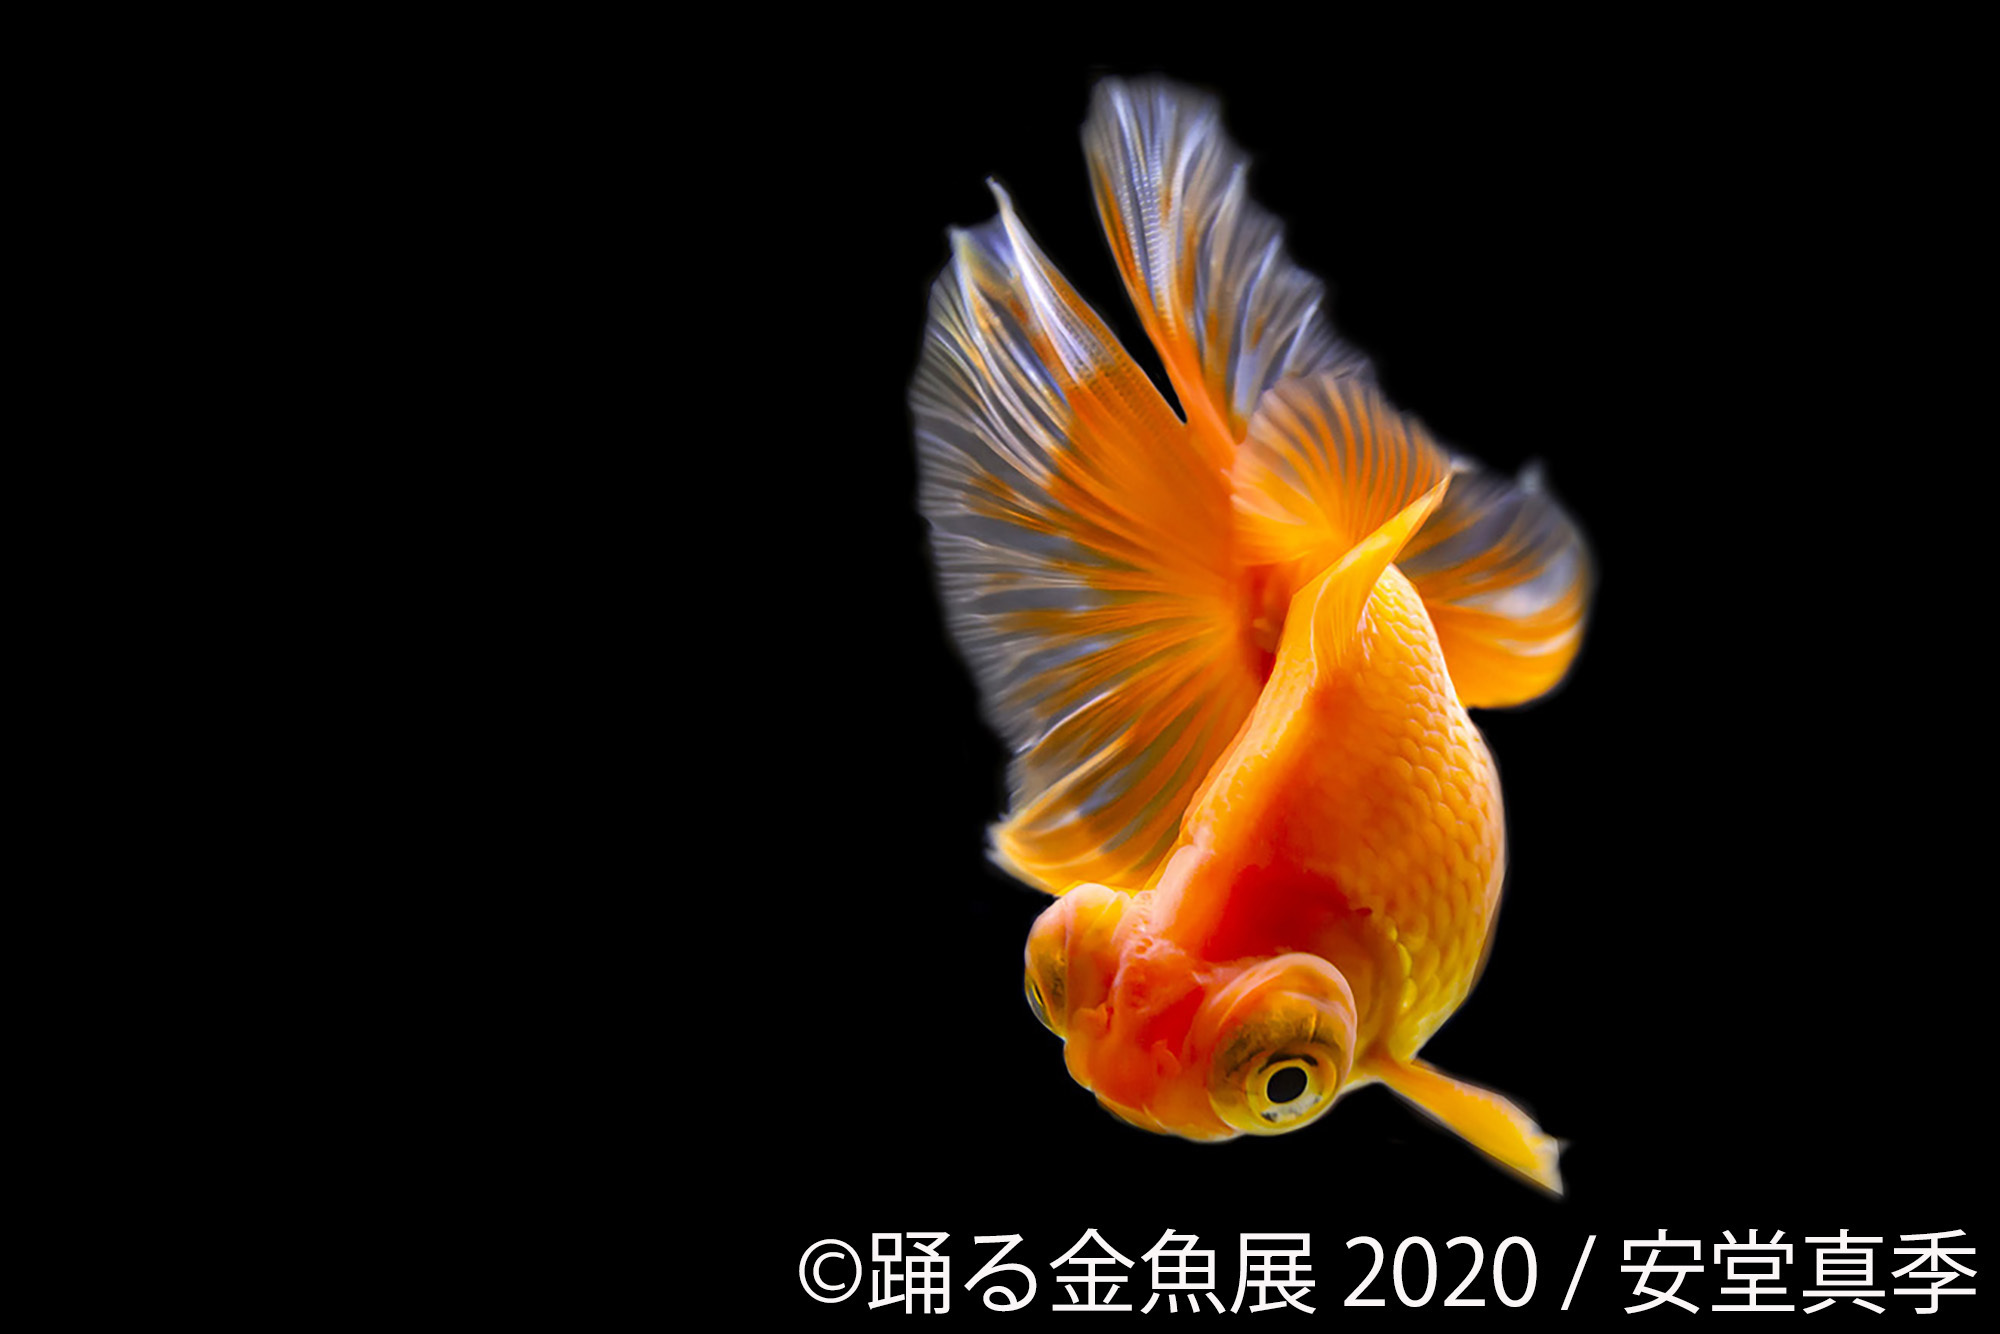 夏の風物詩 金魚 の優雅で美しい作品は 涼 と 癒し を感じる 踊る金魚展 が6月から東京 名古屋で開催 新作多数 記事詳細 Infoseekニュース